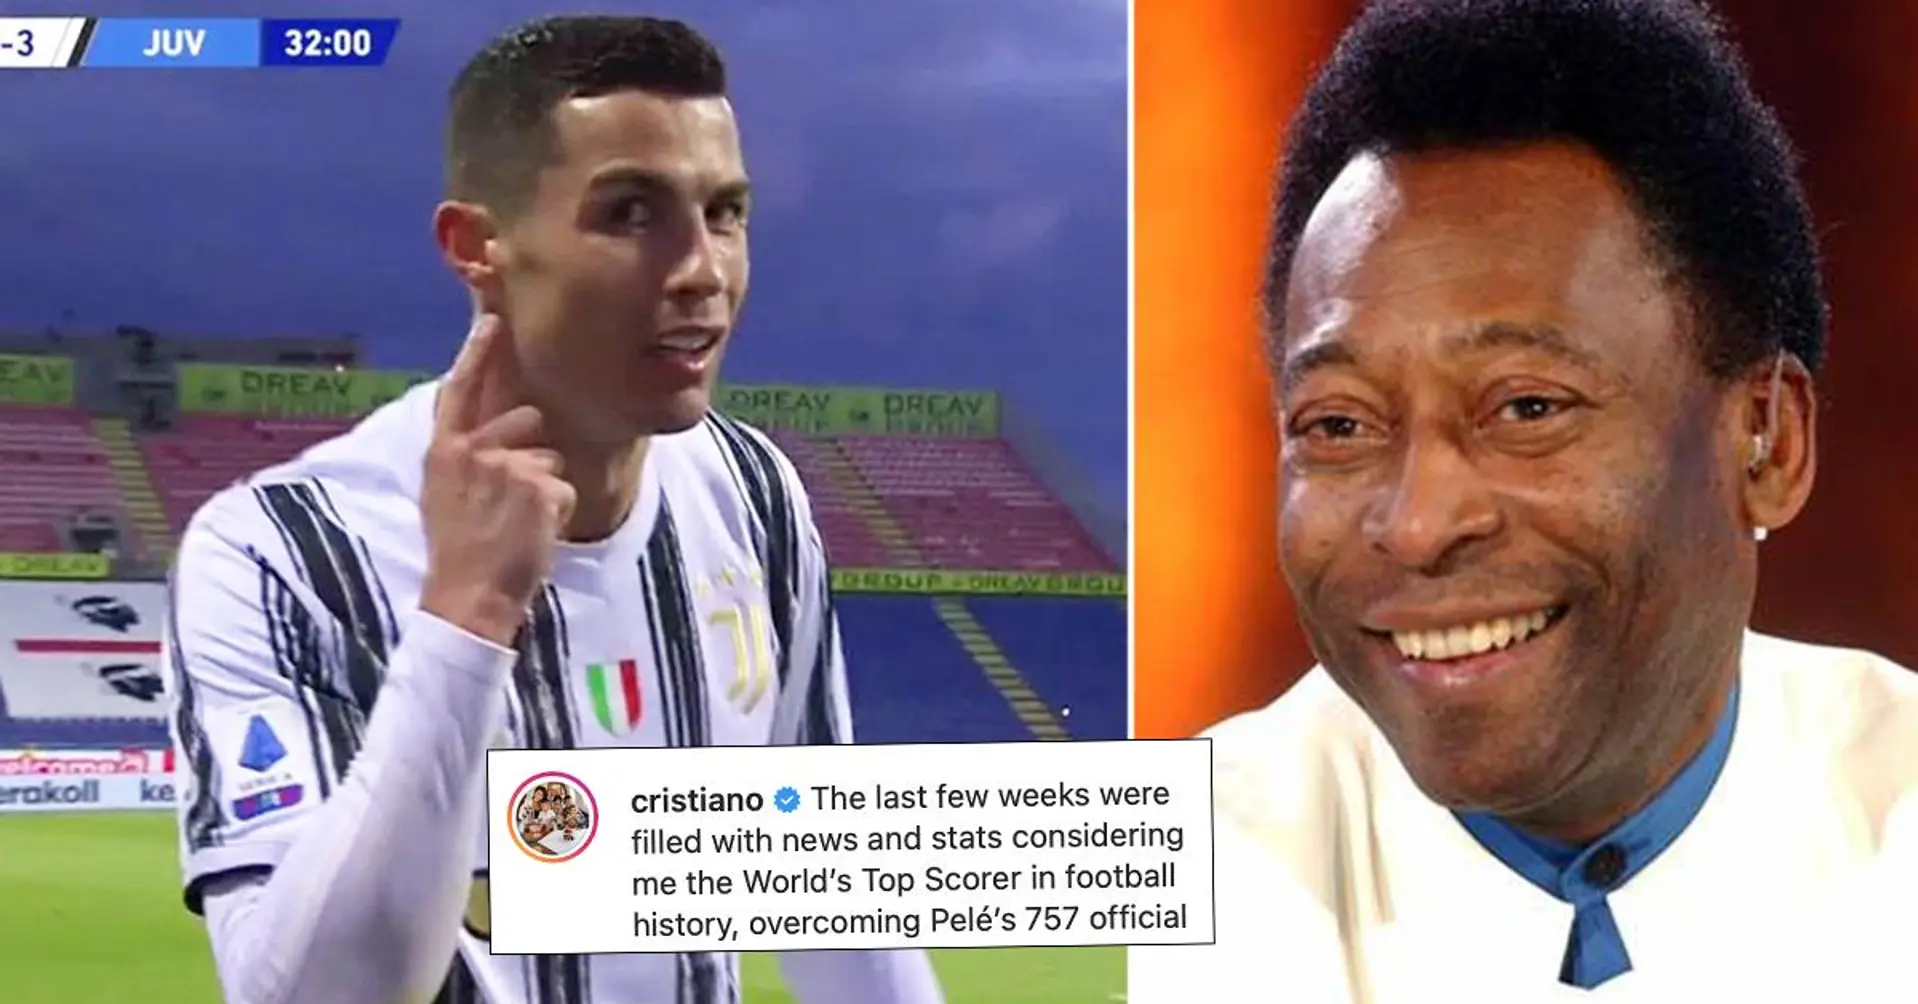 Cristiano erklärt sich zum Torschützenkönig der Fußballgeschichte - Pele reagiert sofort in den Kommentaren